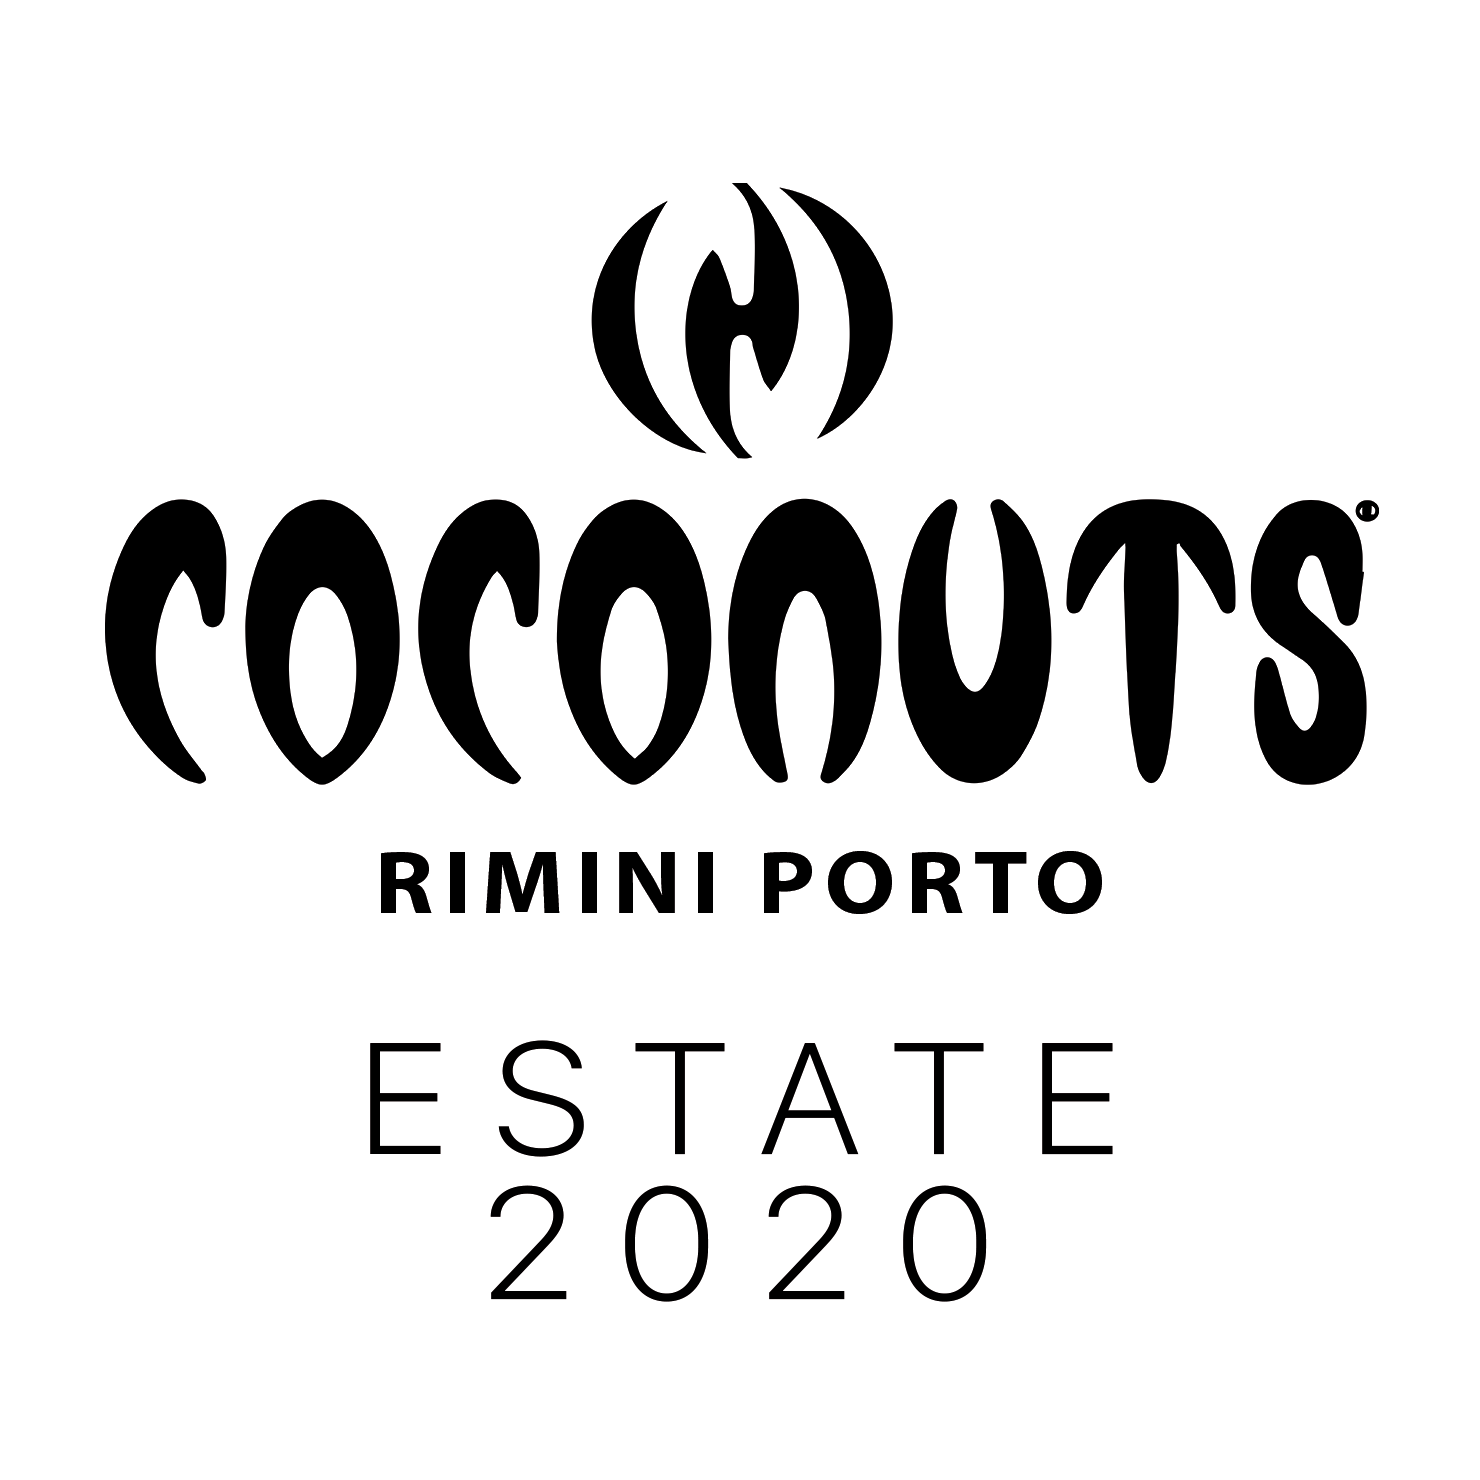 La Discoteca Coconuts di Rimini è aperta tutte le notti